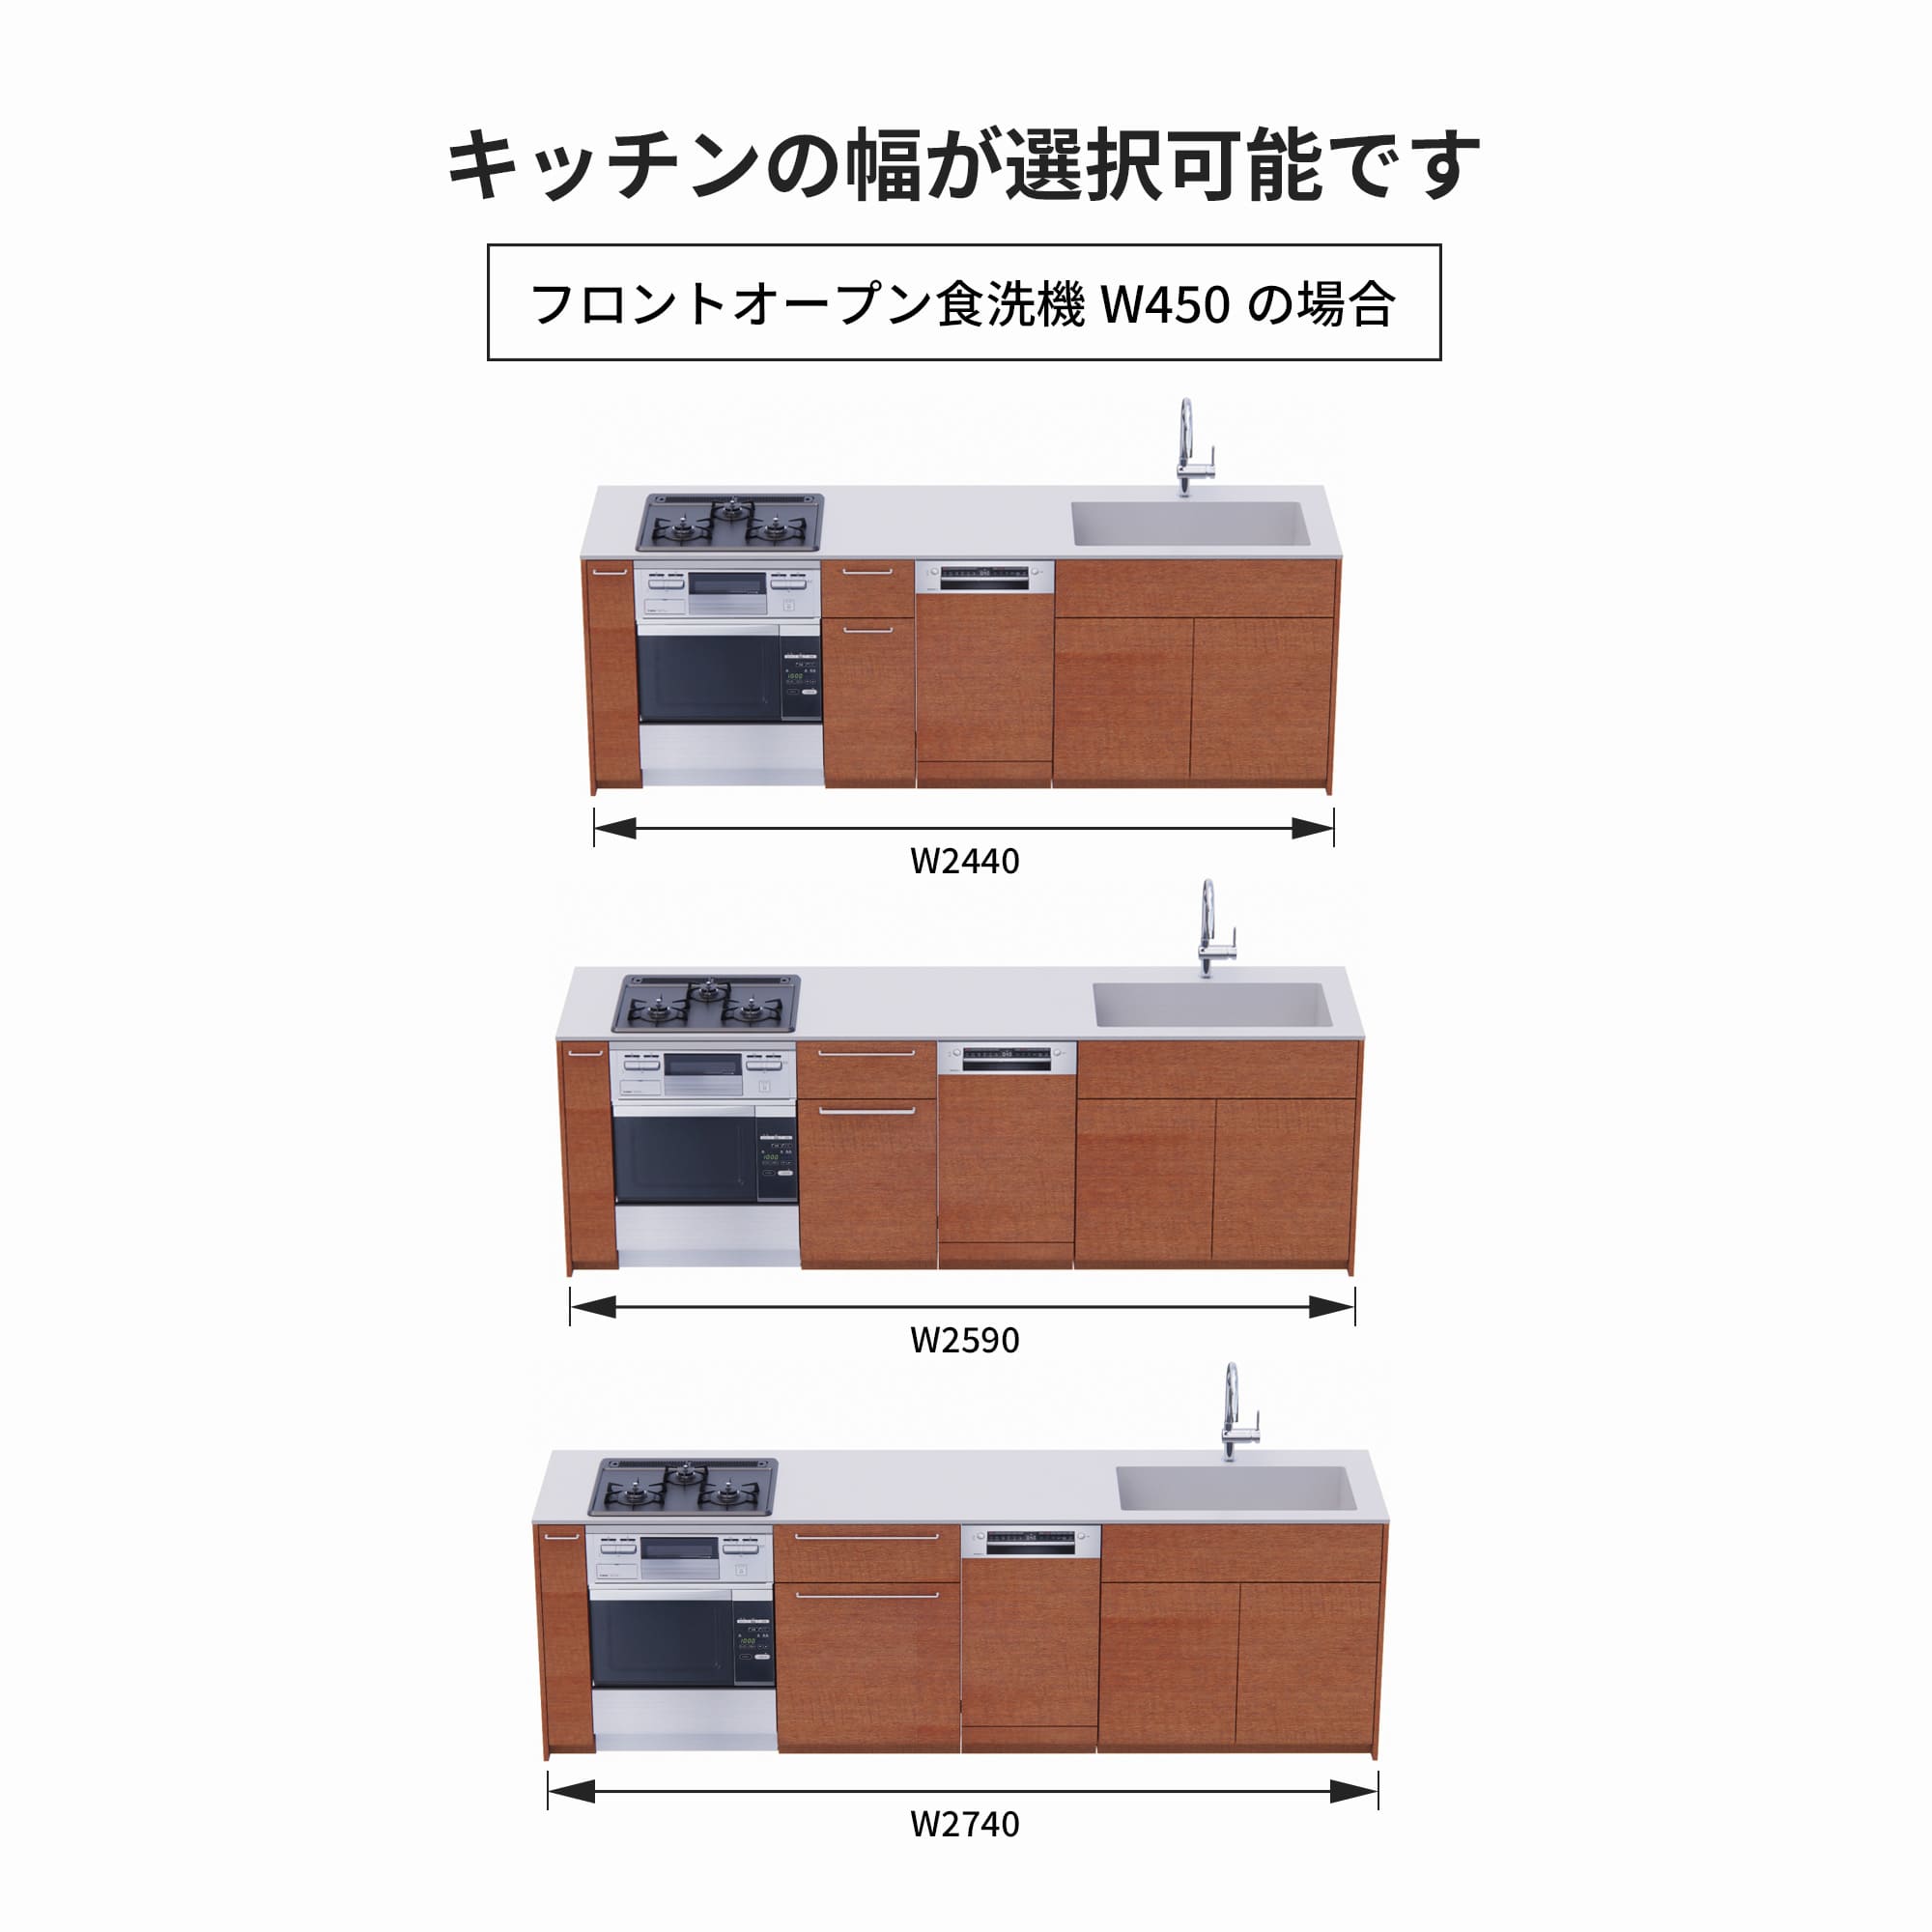 木製システムキッチン 対面型 W2440～2740・コンロあり / オーブンあり / 食洗機あり KB-KC022-46-G183 フロントオープン450の場合